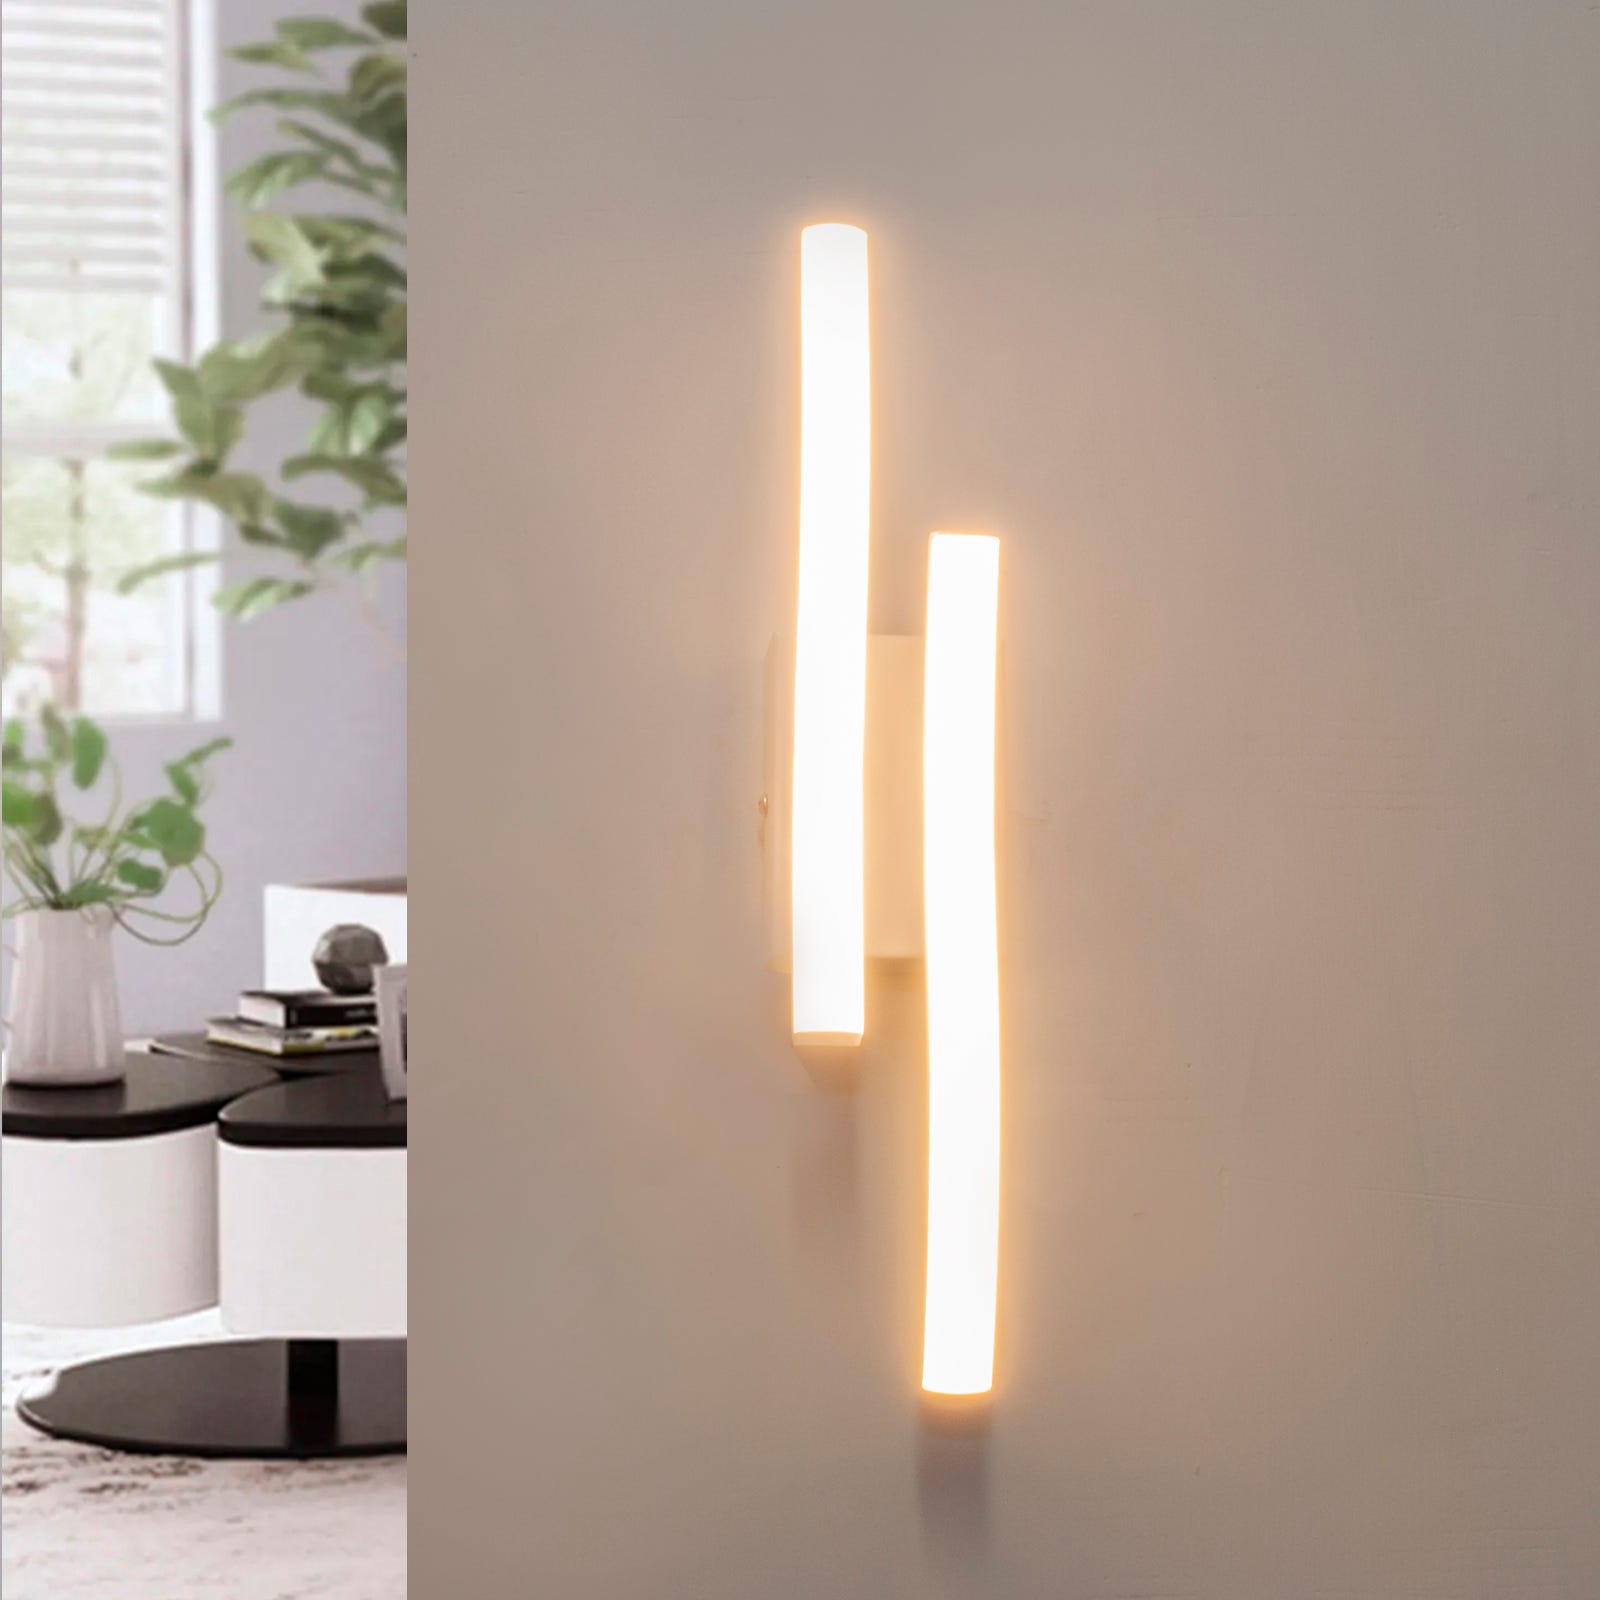 Lampada parete muro applique bianco moderno LED 10W luce stilizzata  comodino soggiorno salotto 230V FREDDA 6000K